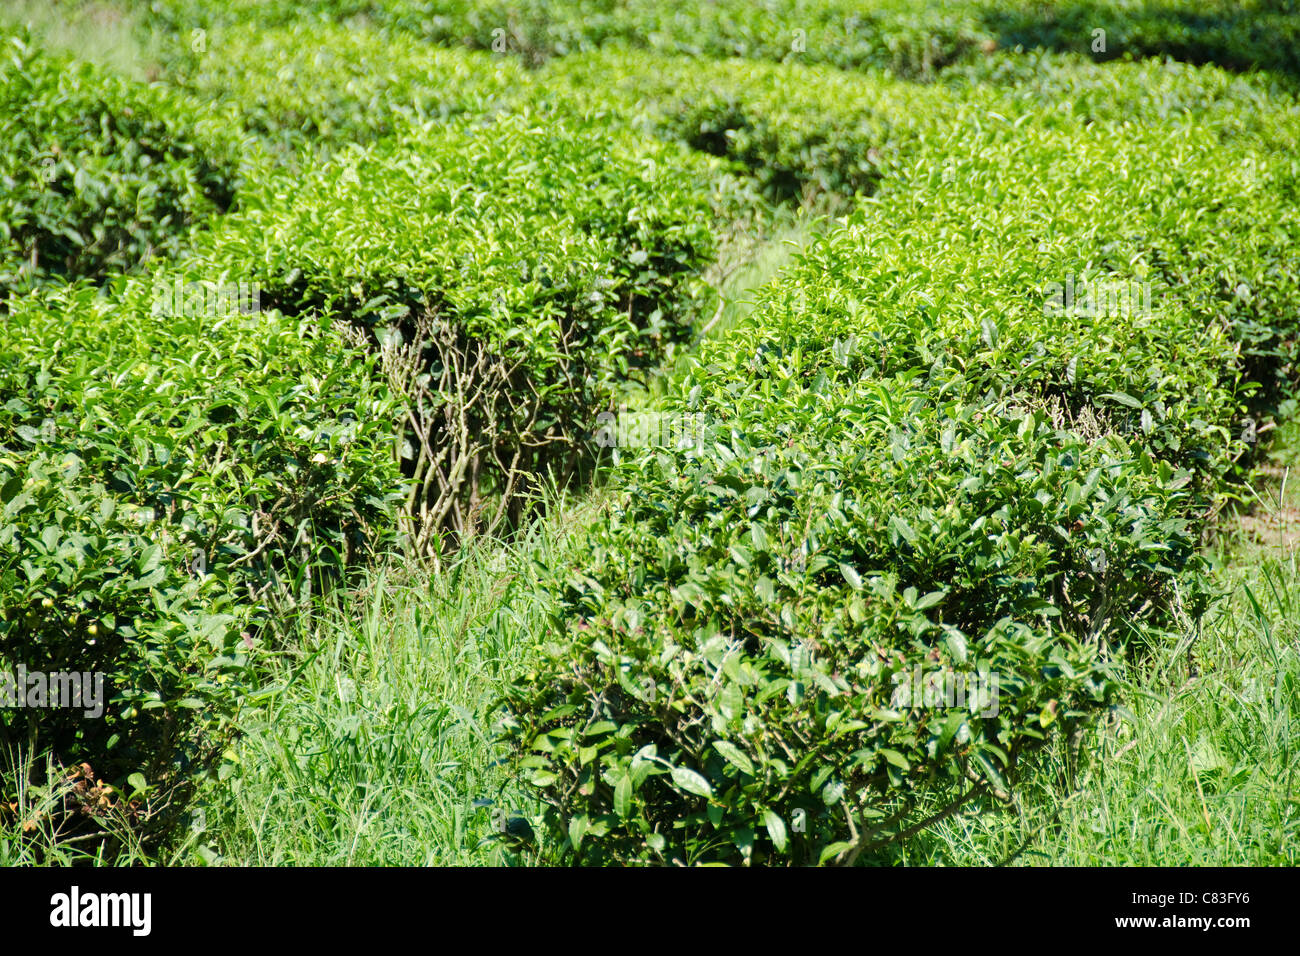 La plantation de thé au Japon avec plusieurs rangées de plants de thé vert Banque D'Images